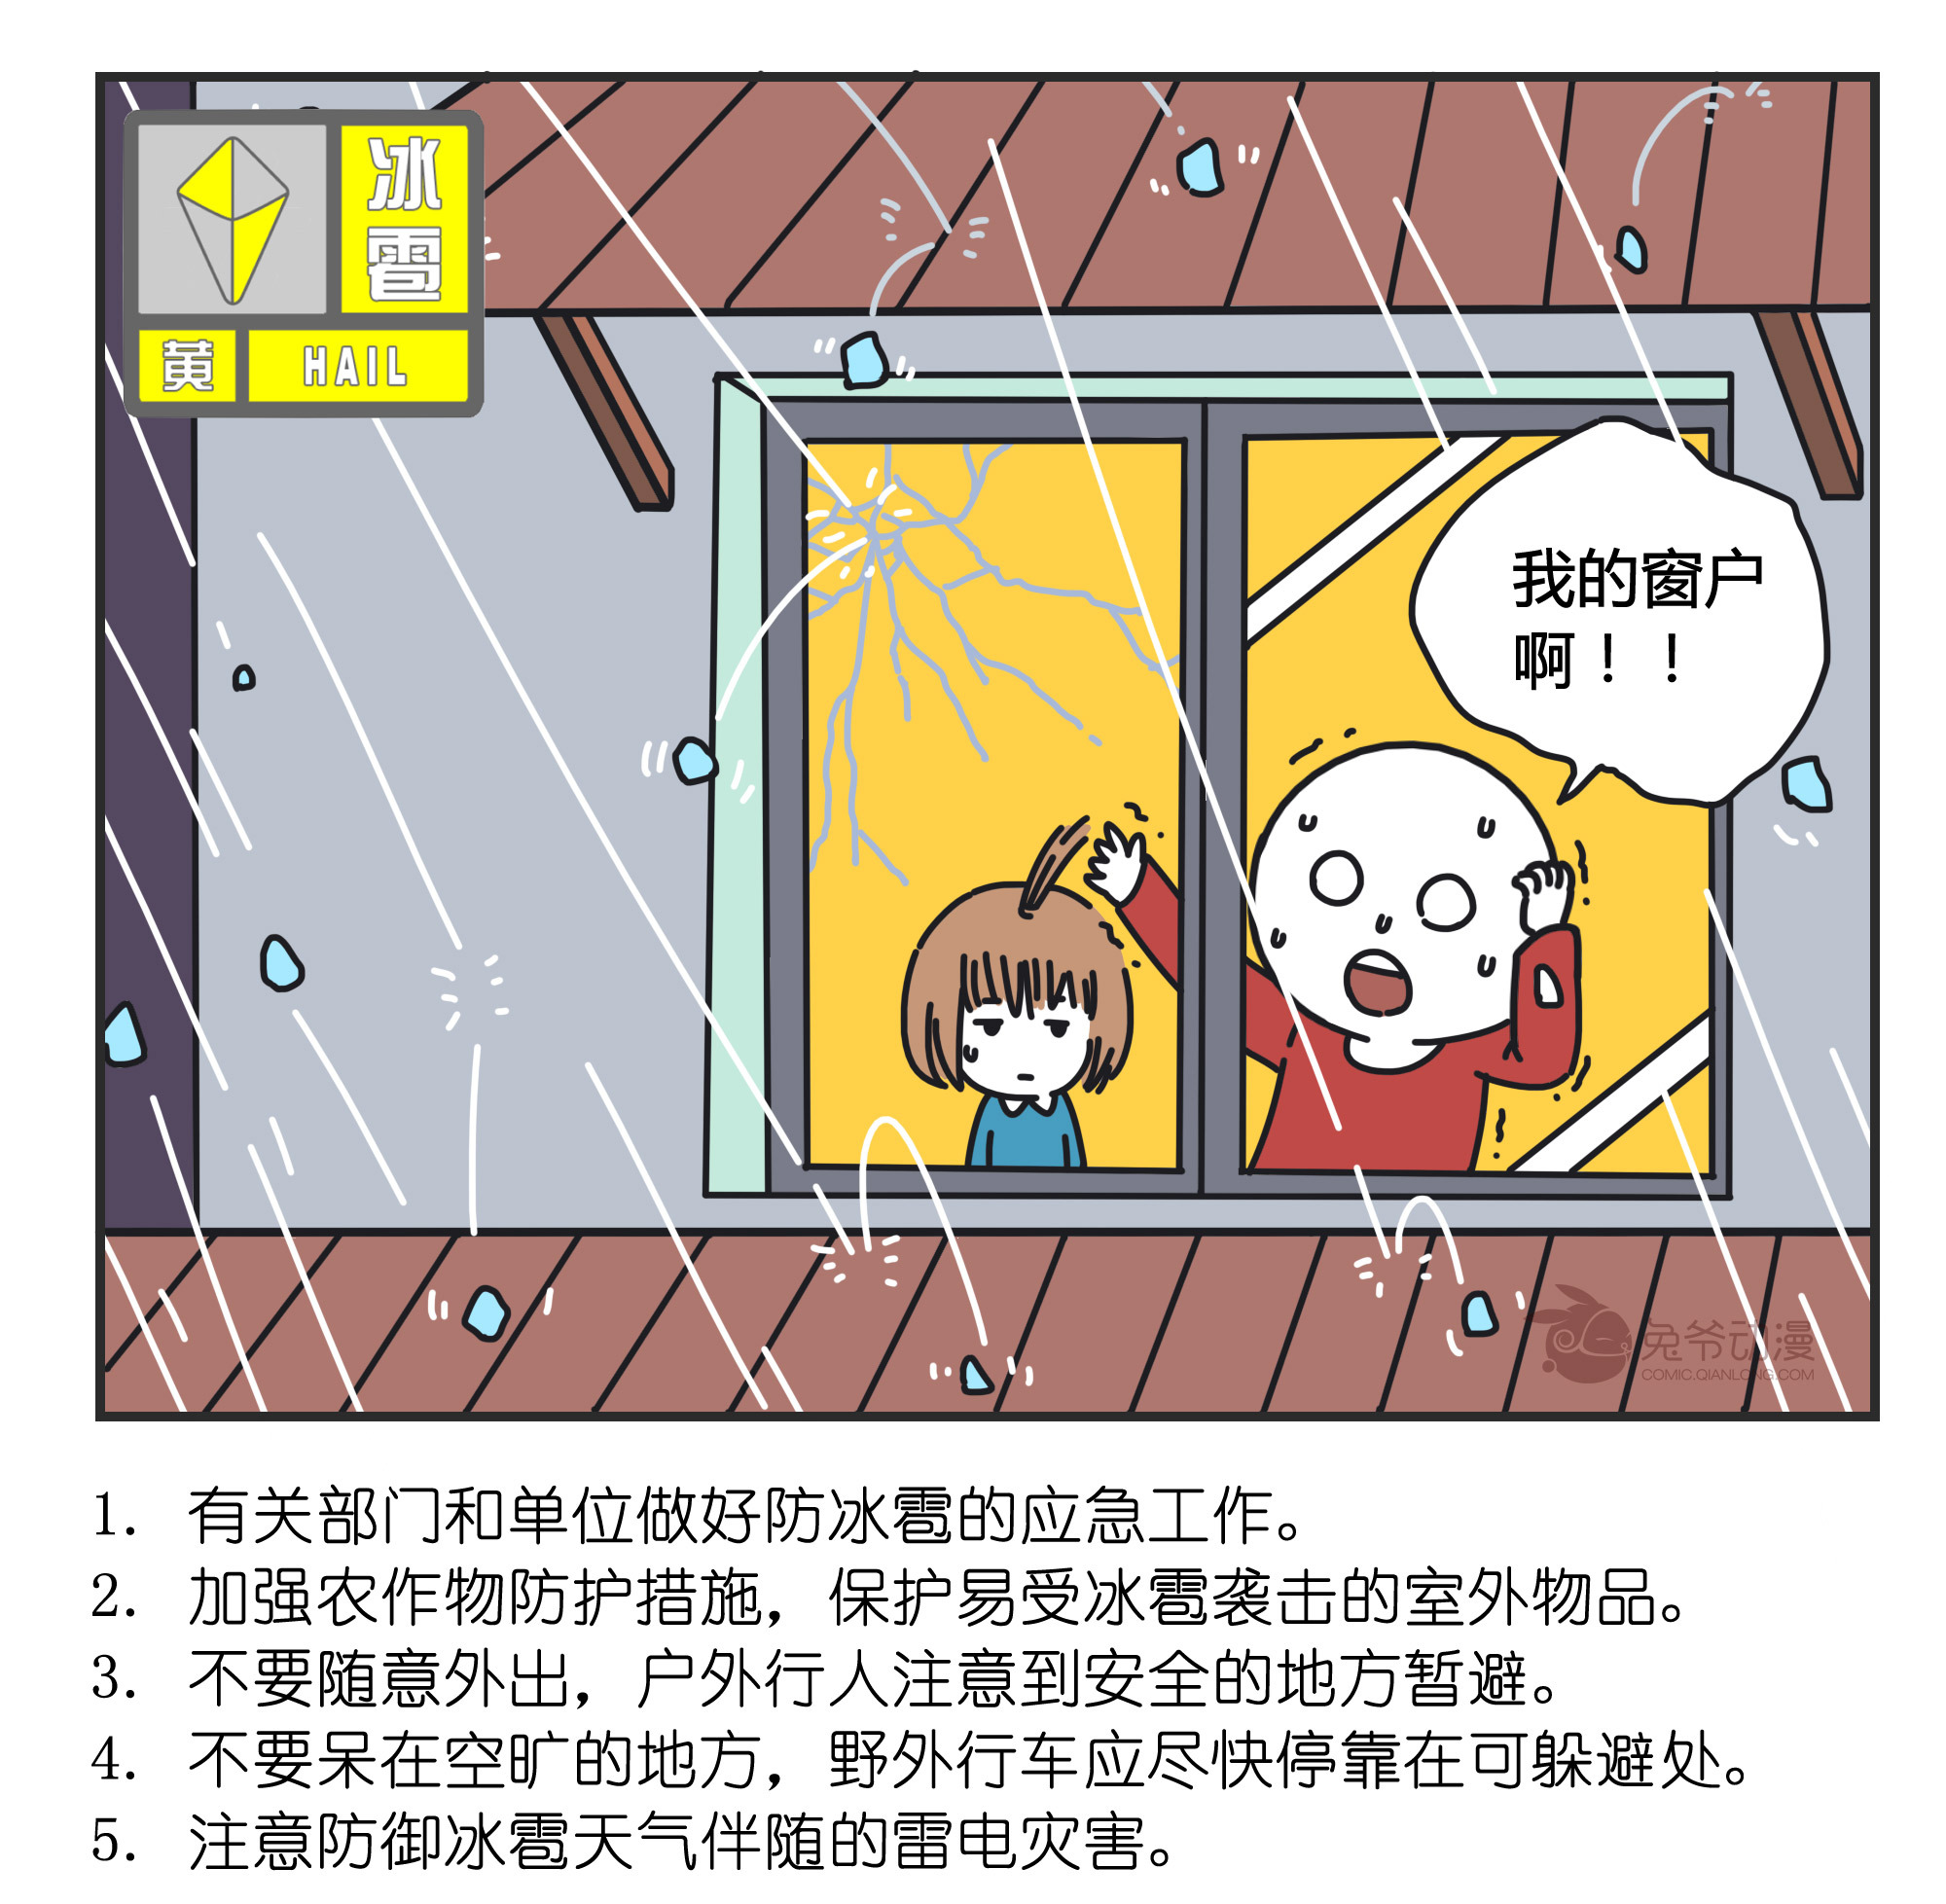 【受权发布】6月29日至7月1日北京市最高气温将达35℃以上